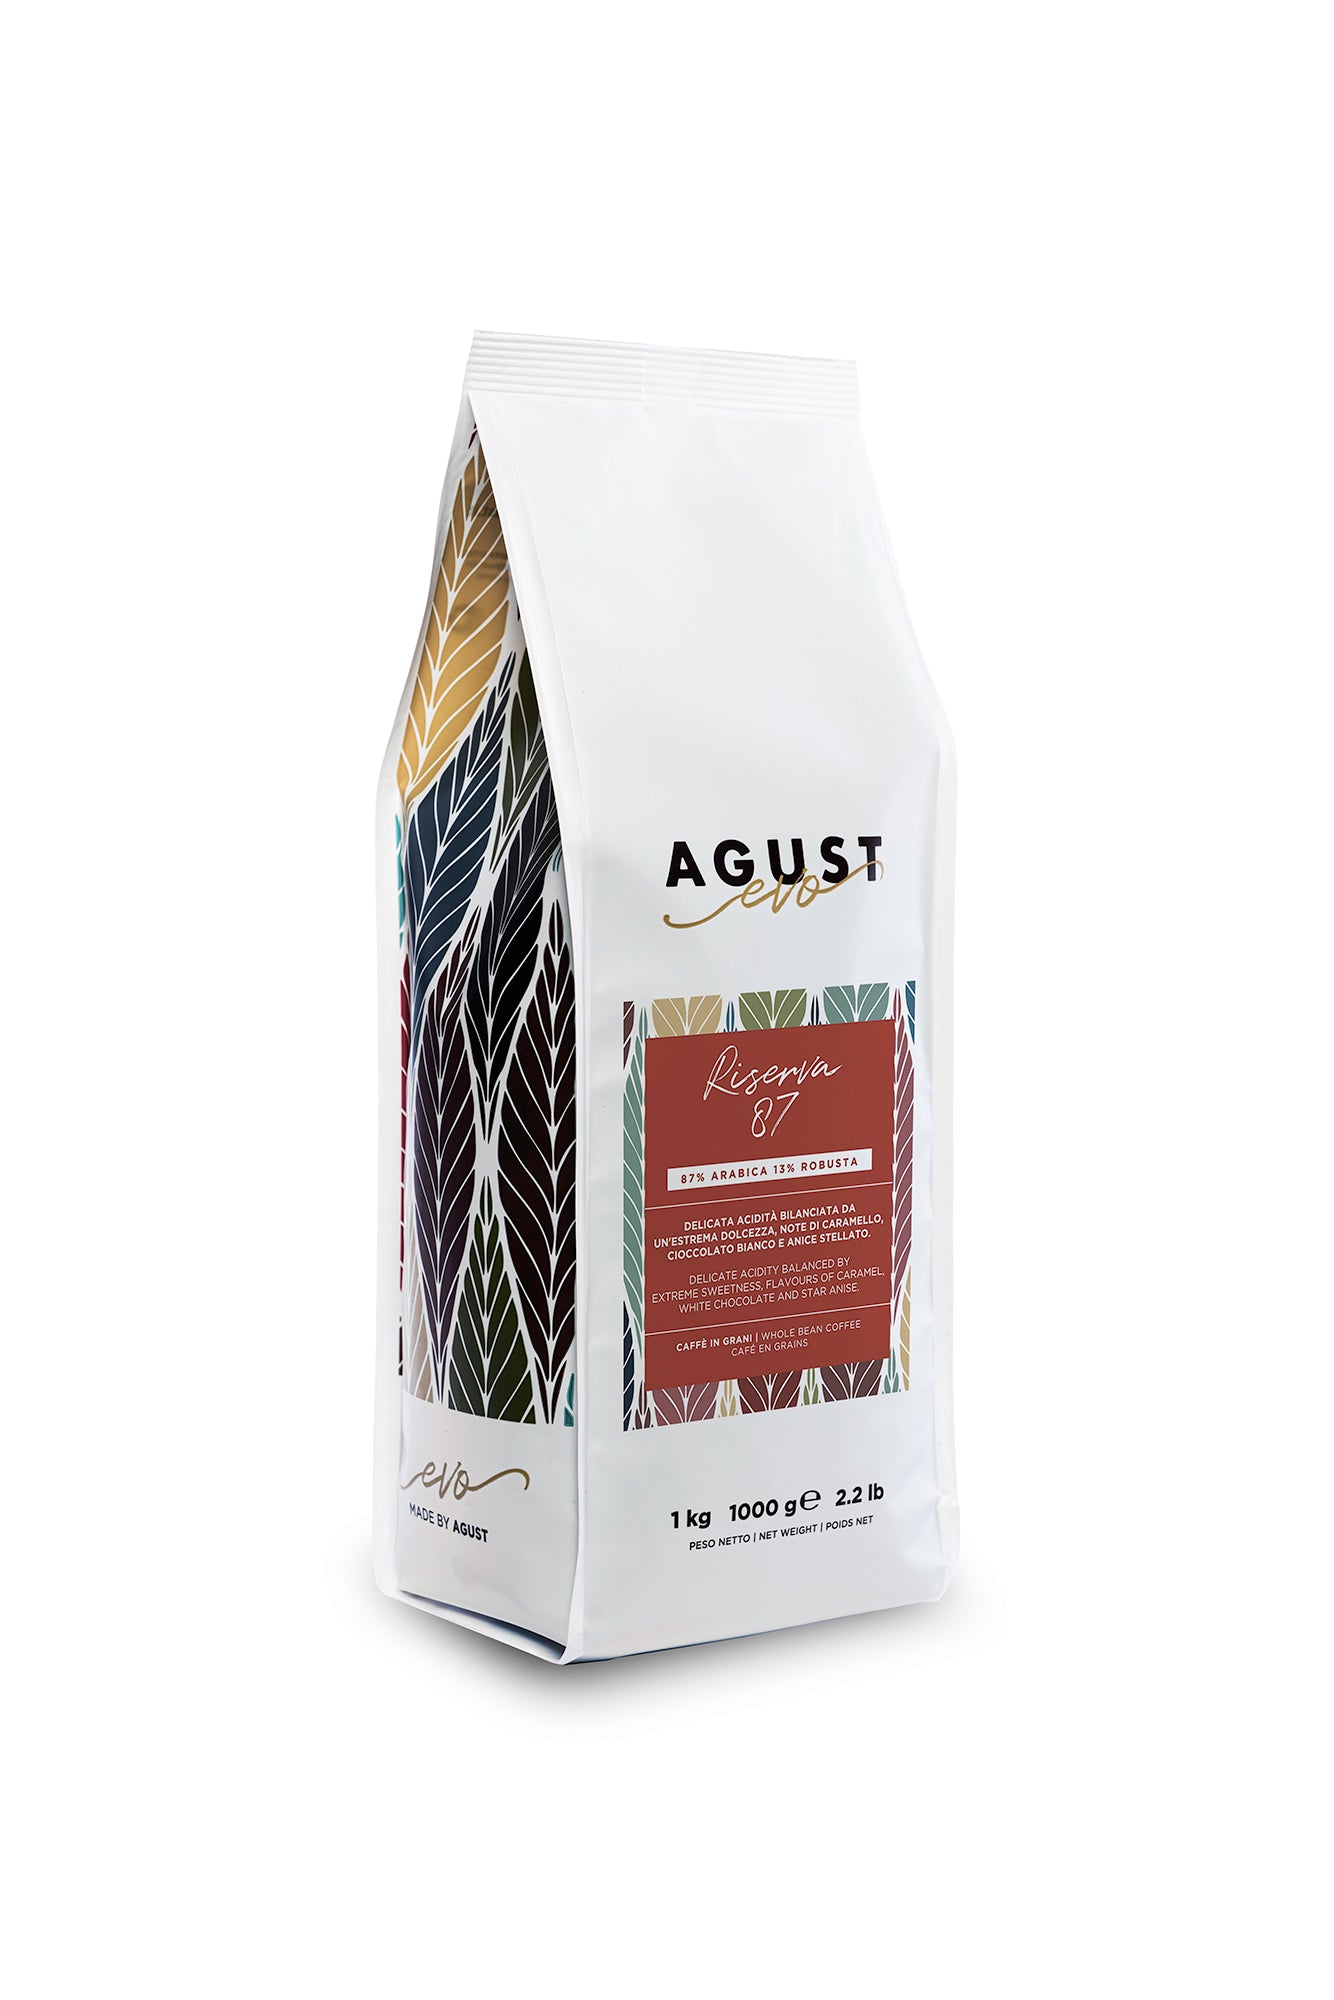 Caffè Agust Riserva 87 geröstete Bio-Kaffeebohnen 